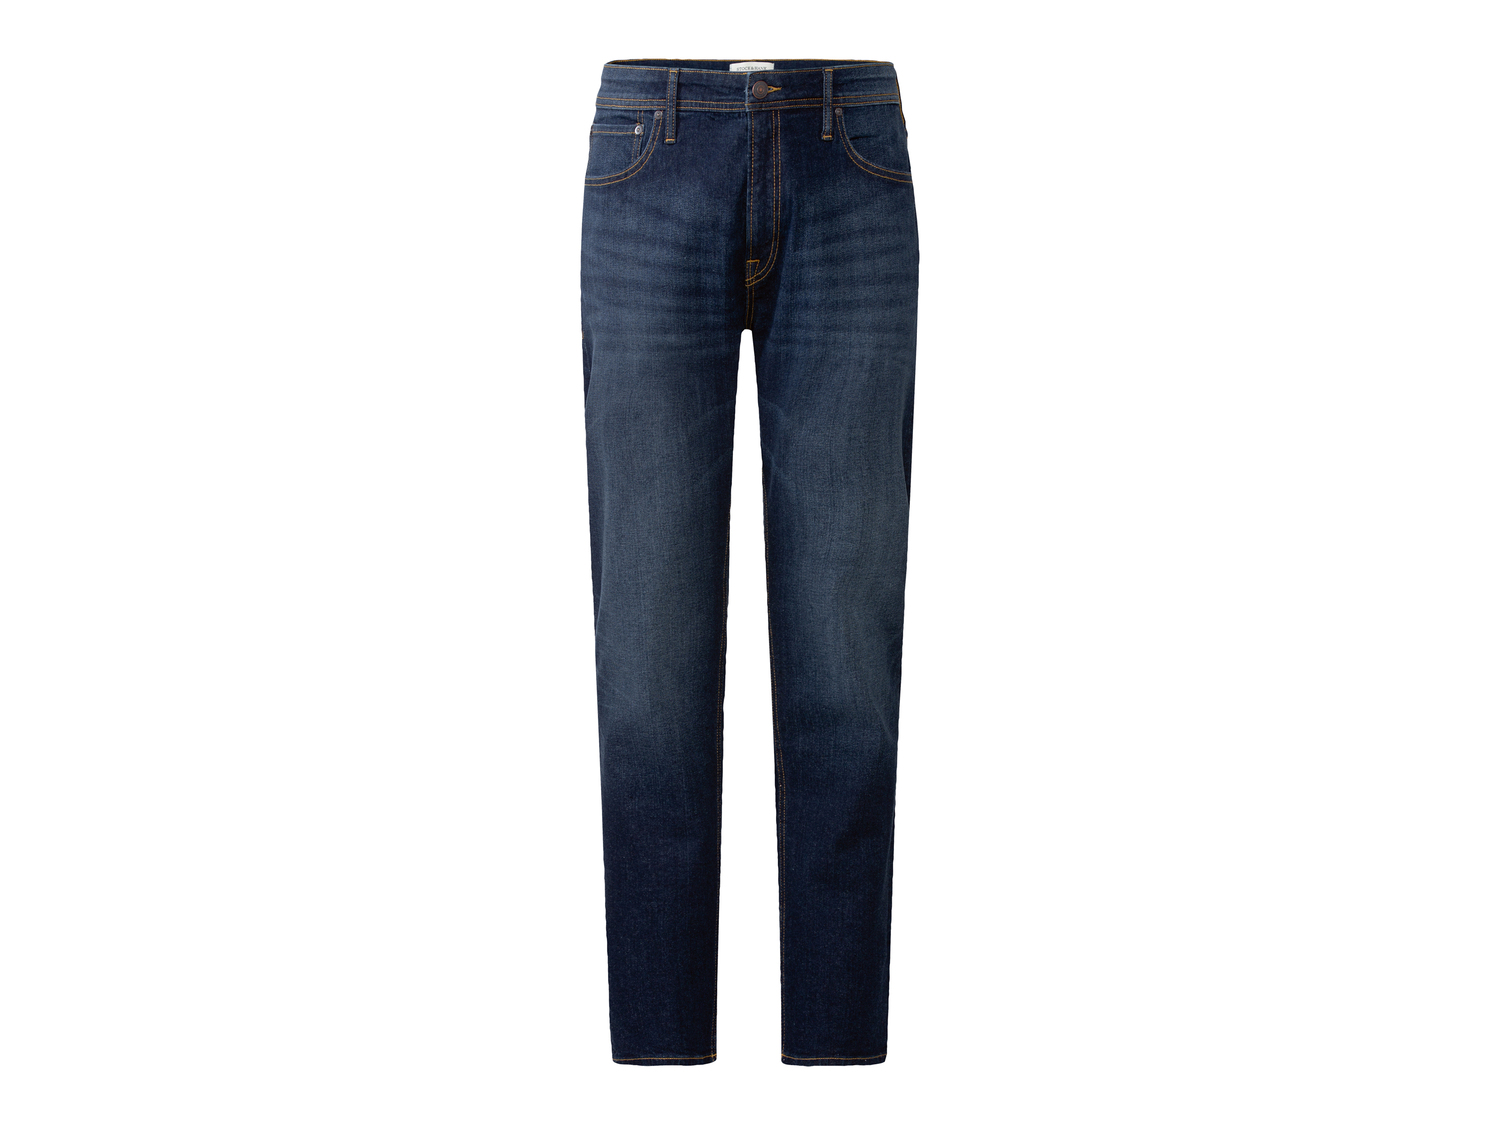 Jeans da uomo Stock-hank, prezzo 19.99 &#8364; 
Misure: 32-32 / 36-34
Taglie ...